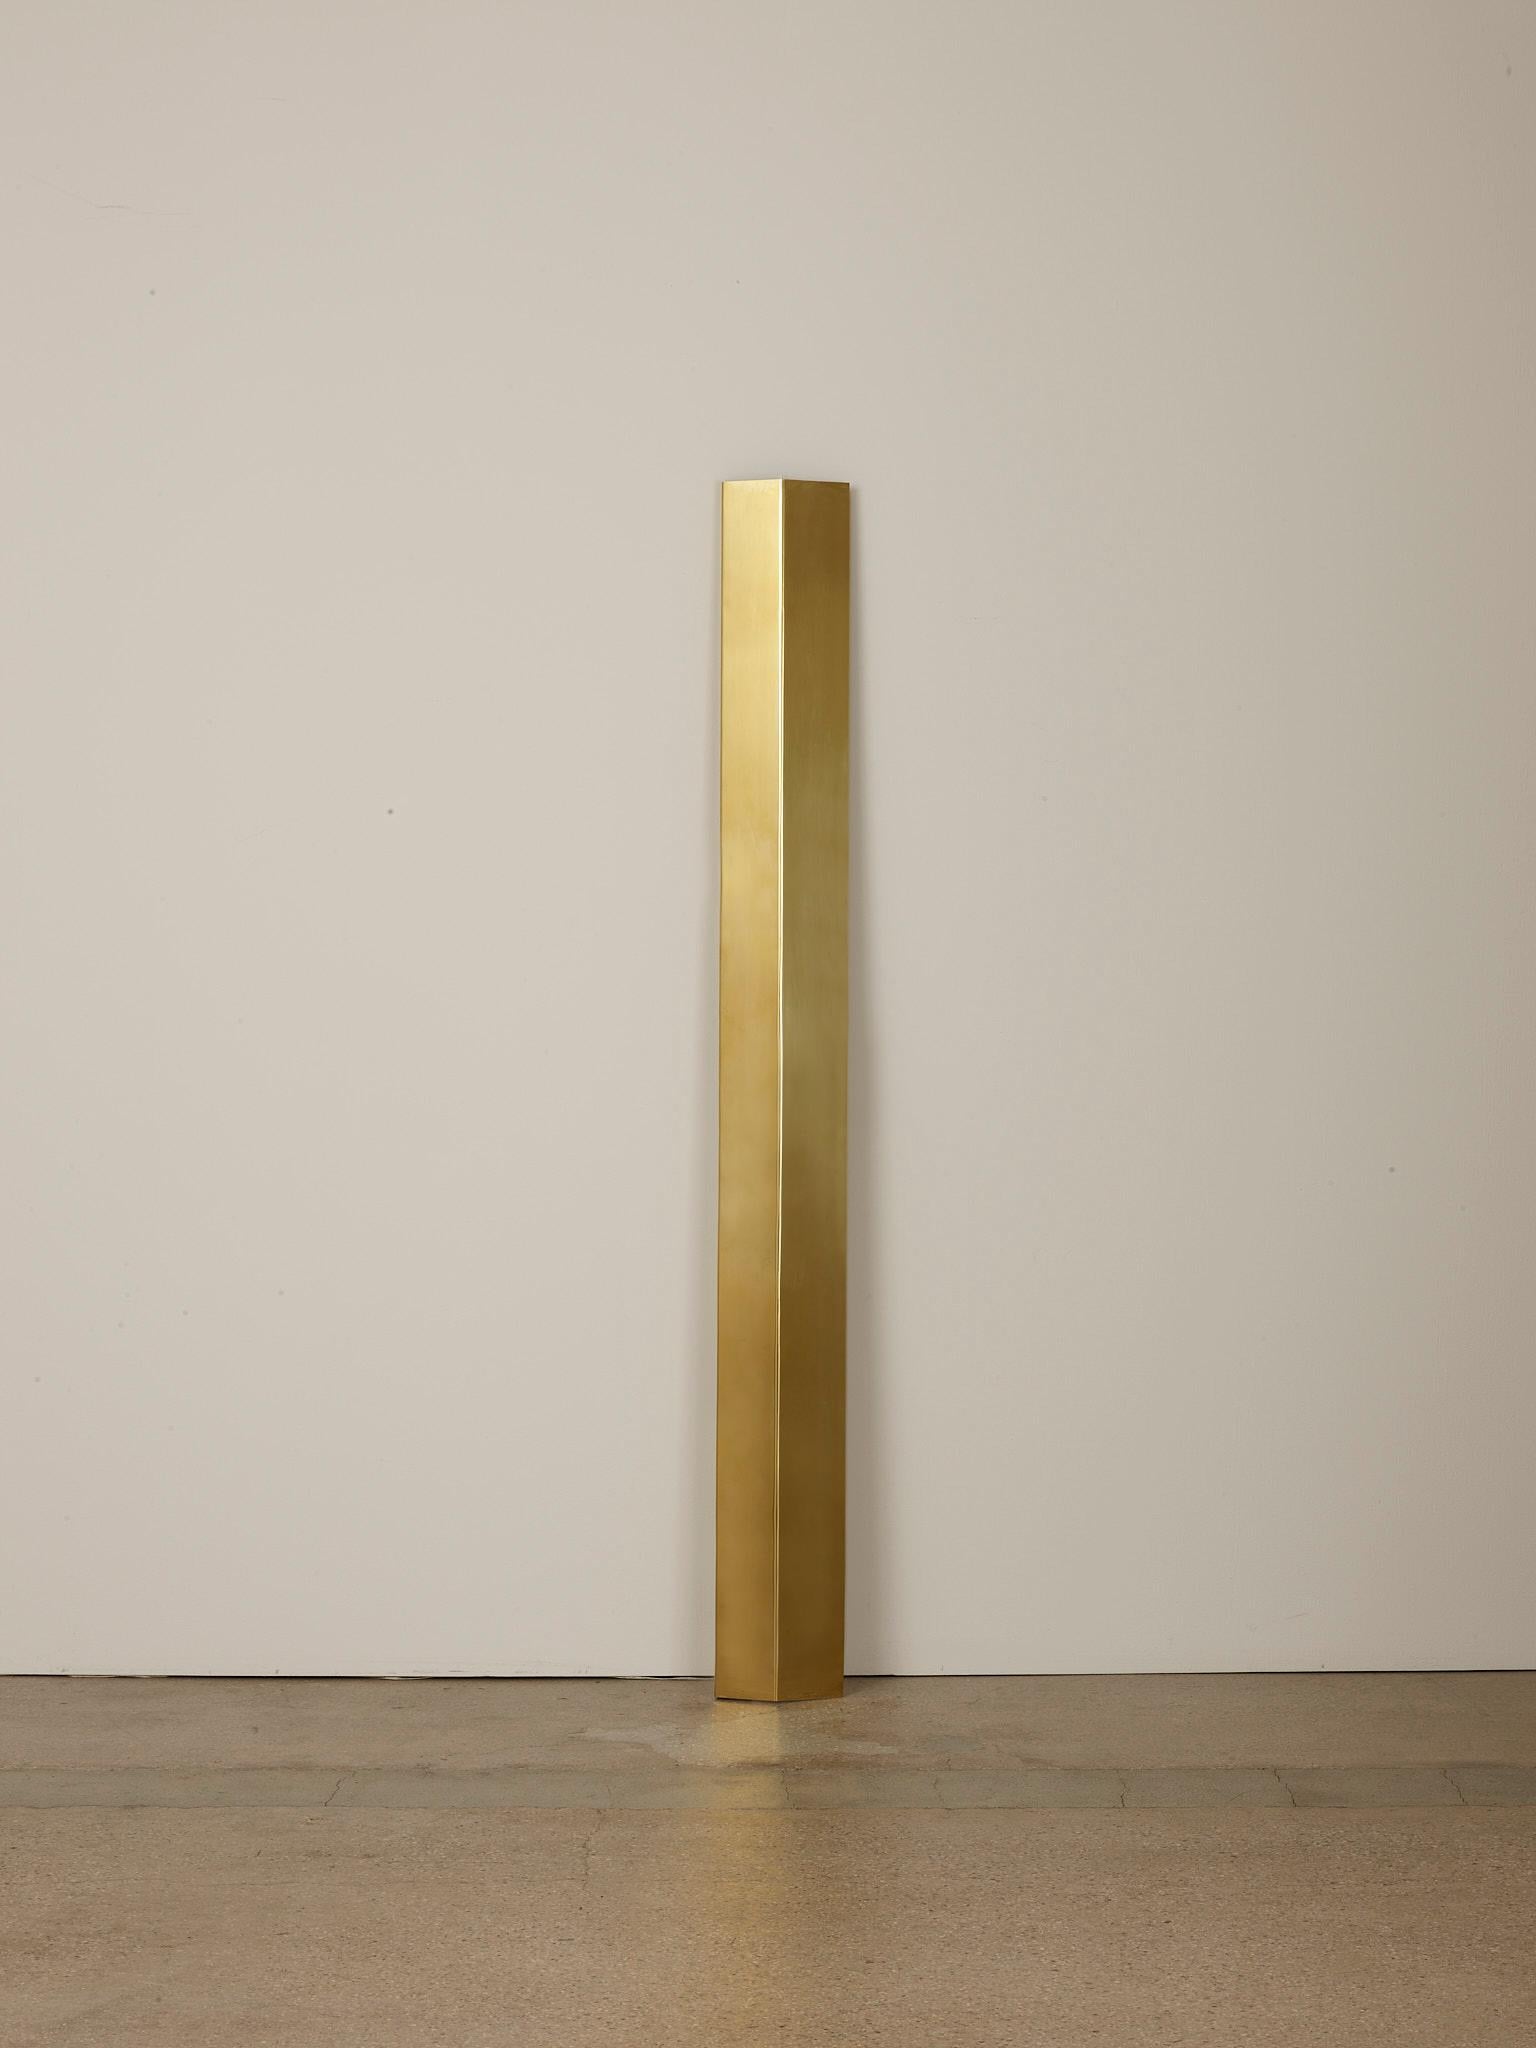 Leaning Mano 6 foot lamp by Umberto Bellardi Ricci.
Dimensions: D 7